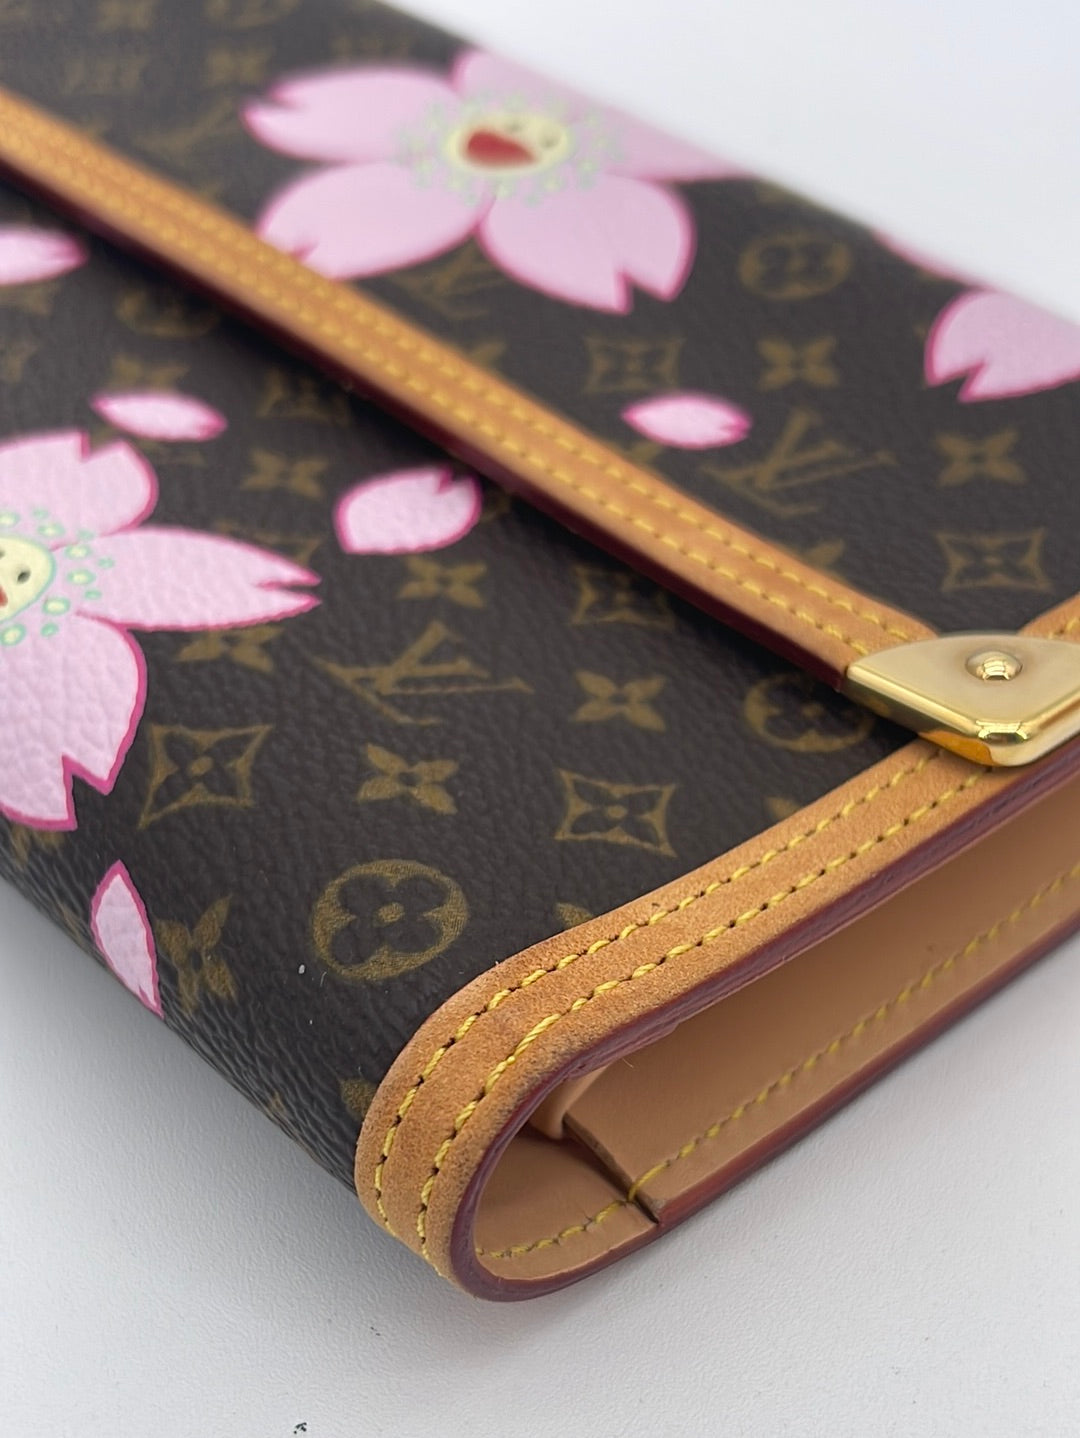 Louis Vuitton Limited Edition Cherry Blossom Monogram Canvas Porte Monnaie  Plat - Yoogi's Closet